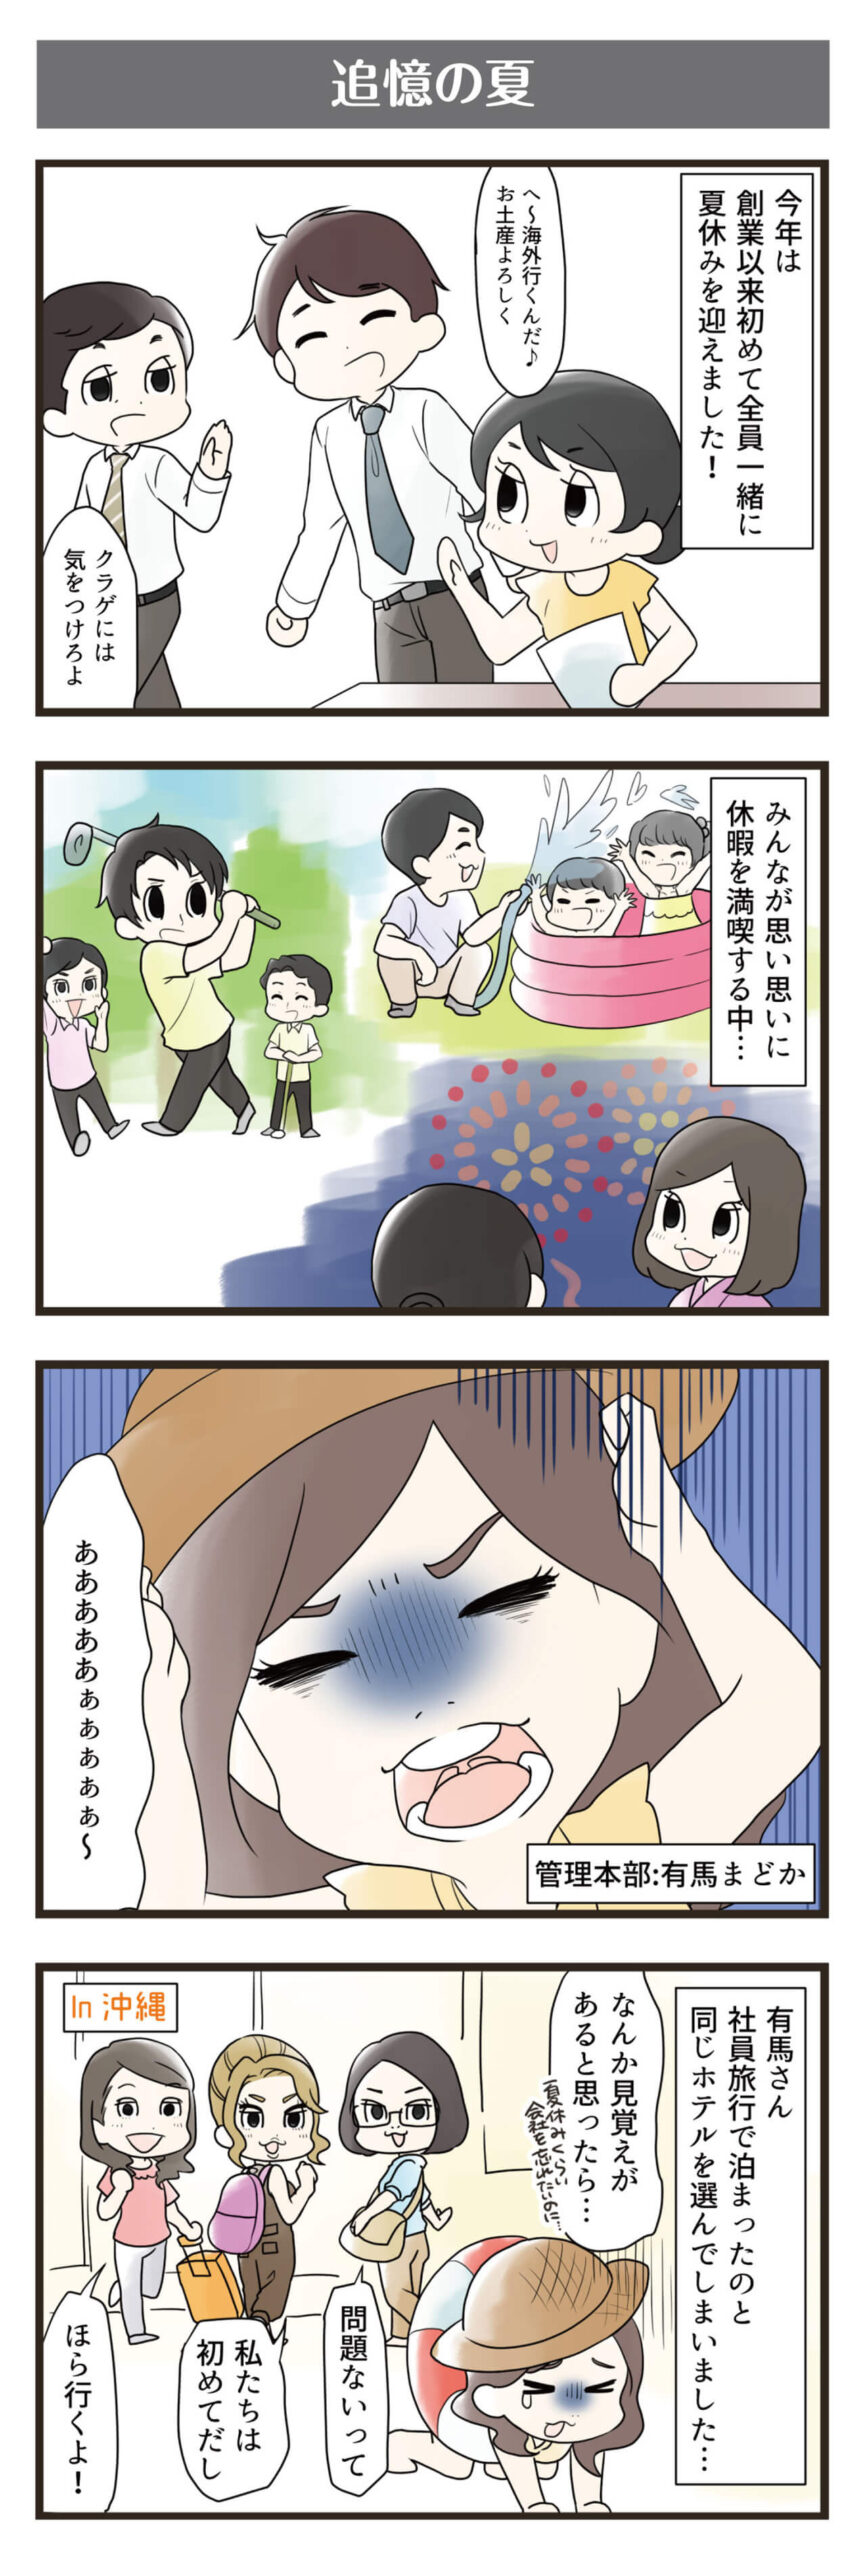 横浜スタイル4コマ漫画9月分